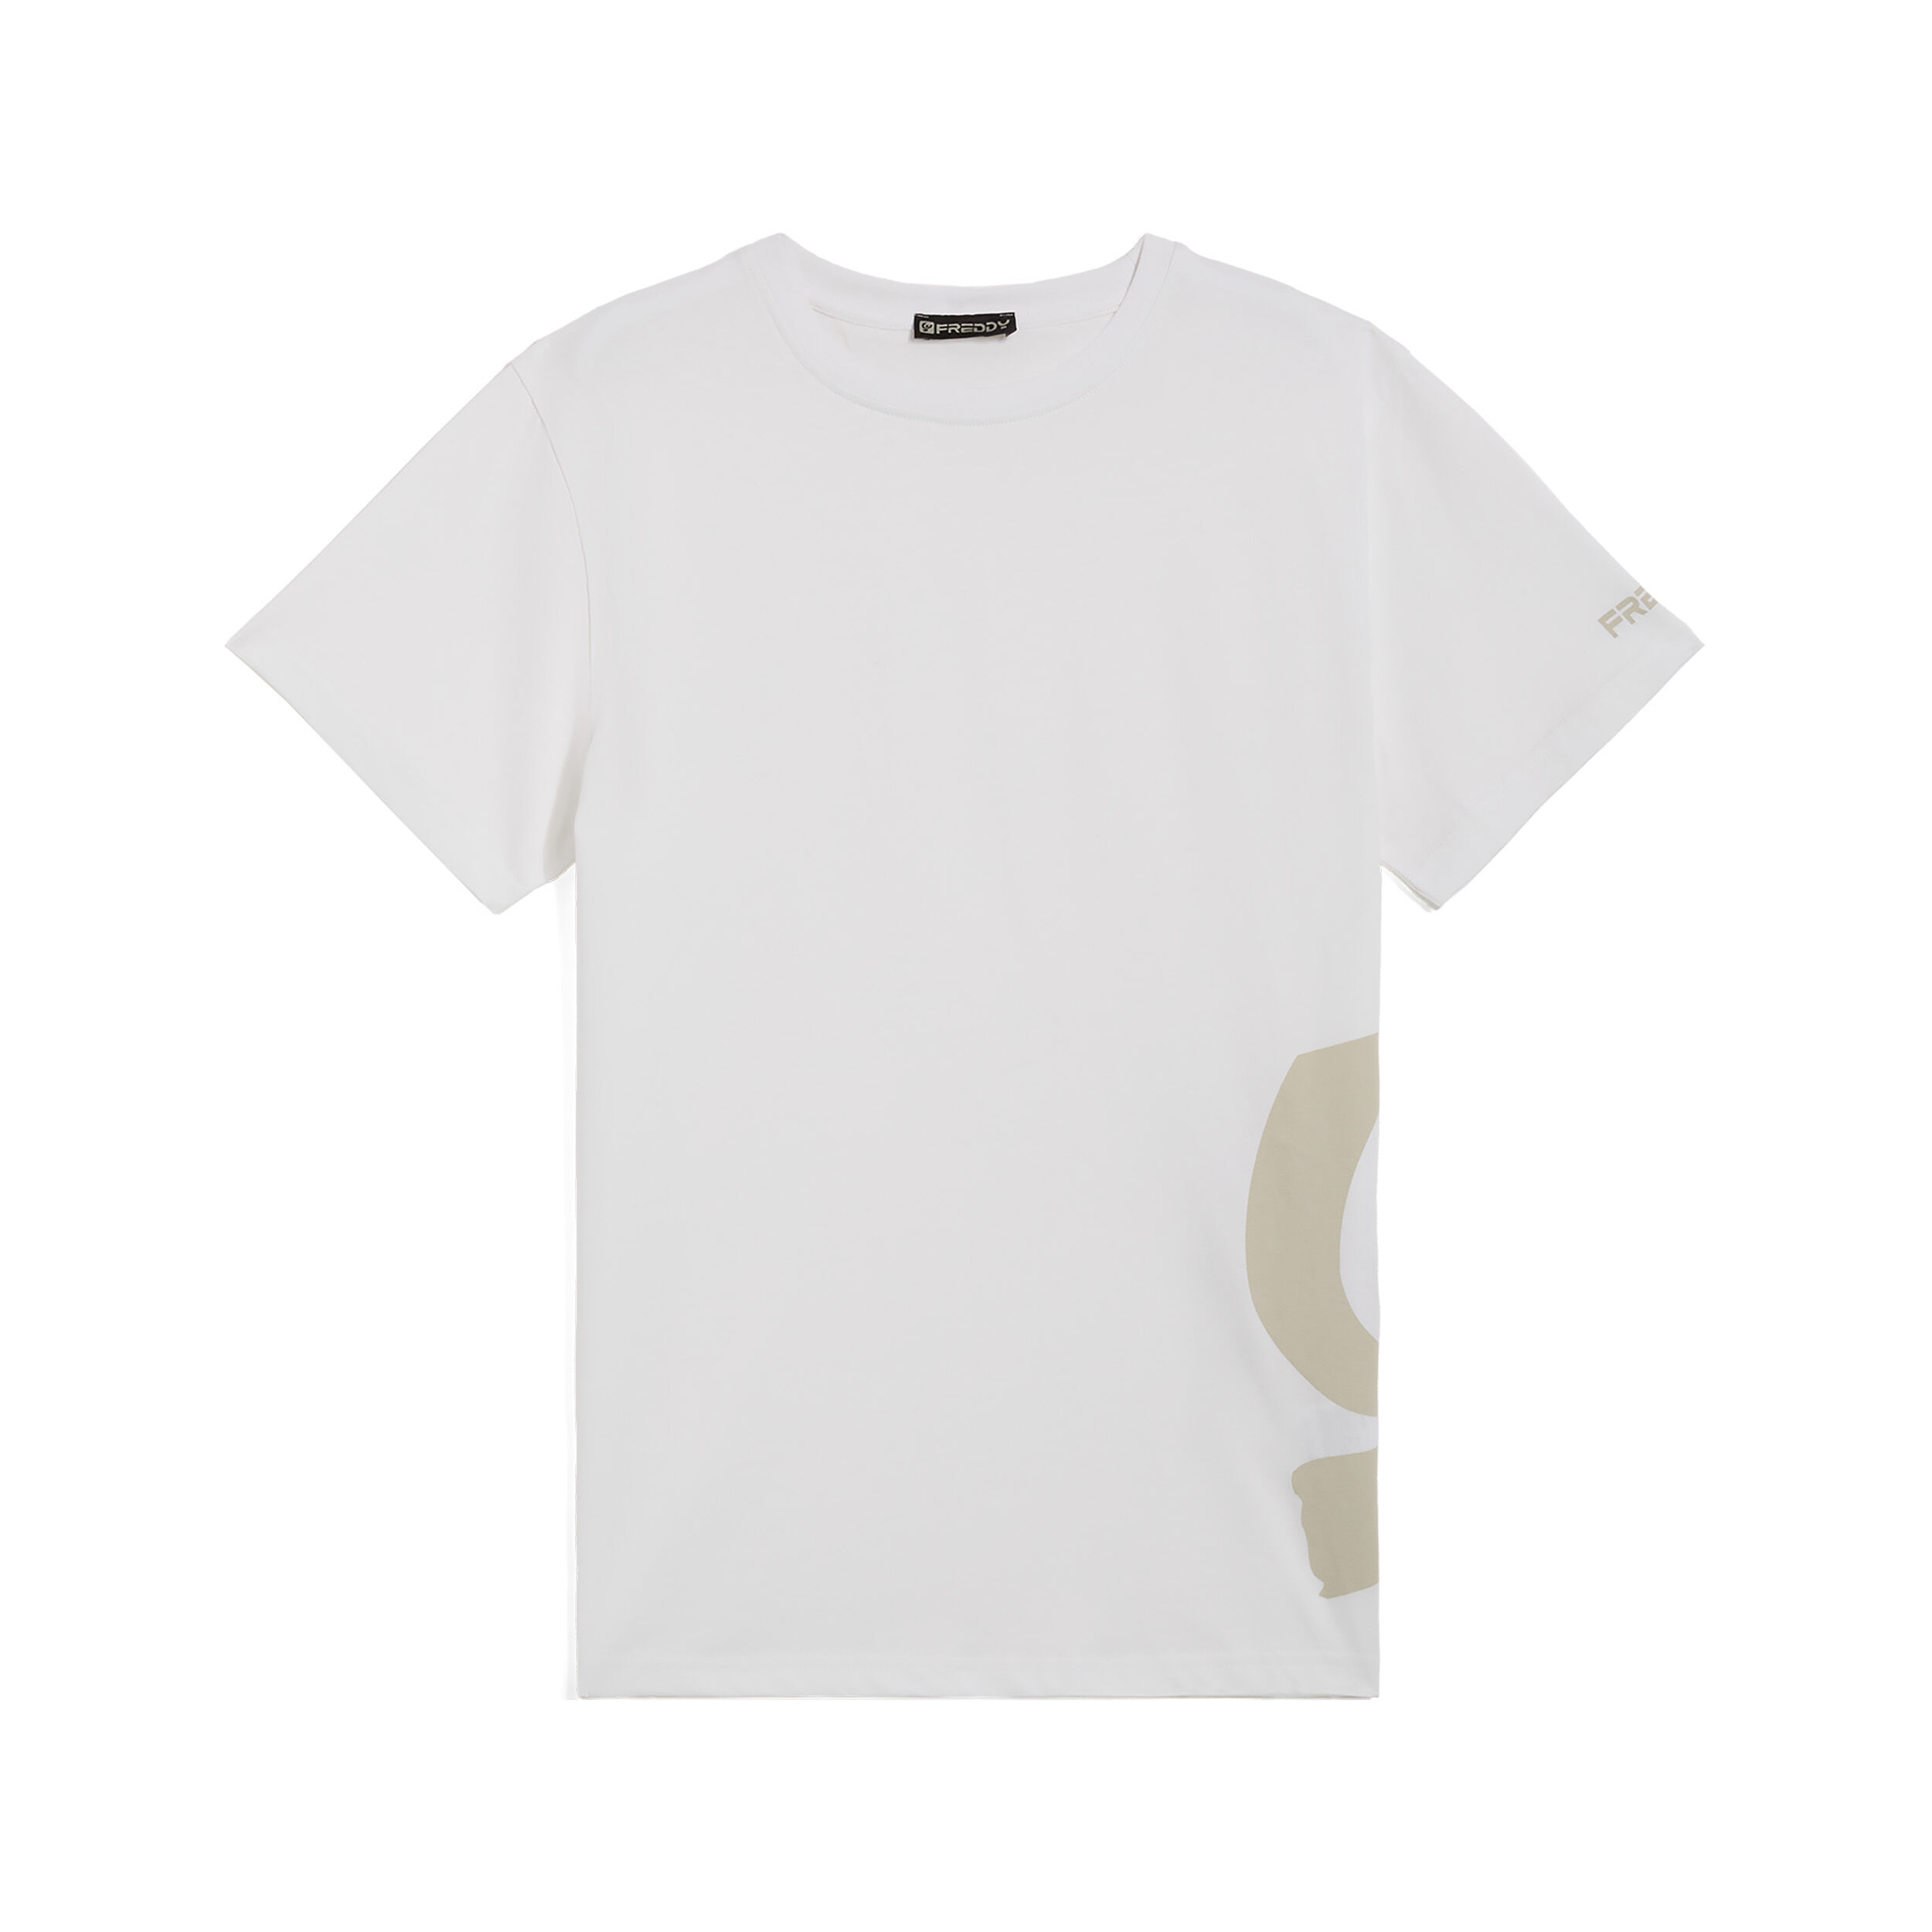 Freddy T-shirt da uomo con maxi logo in tono colore sul fianco Bianco Uomo Large